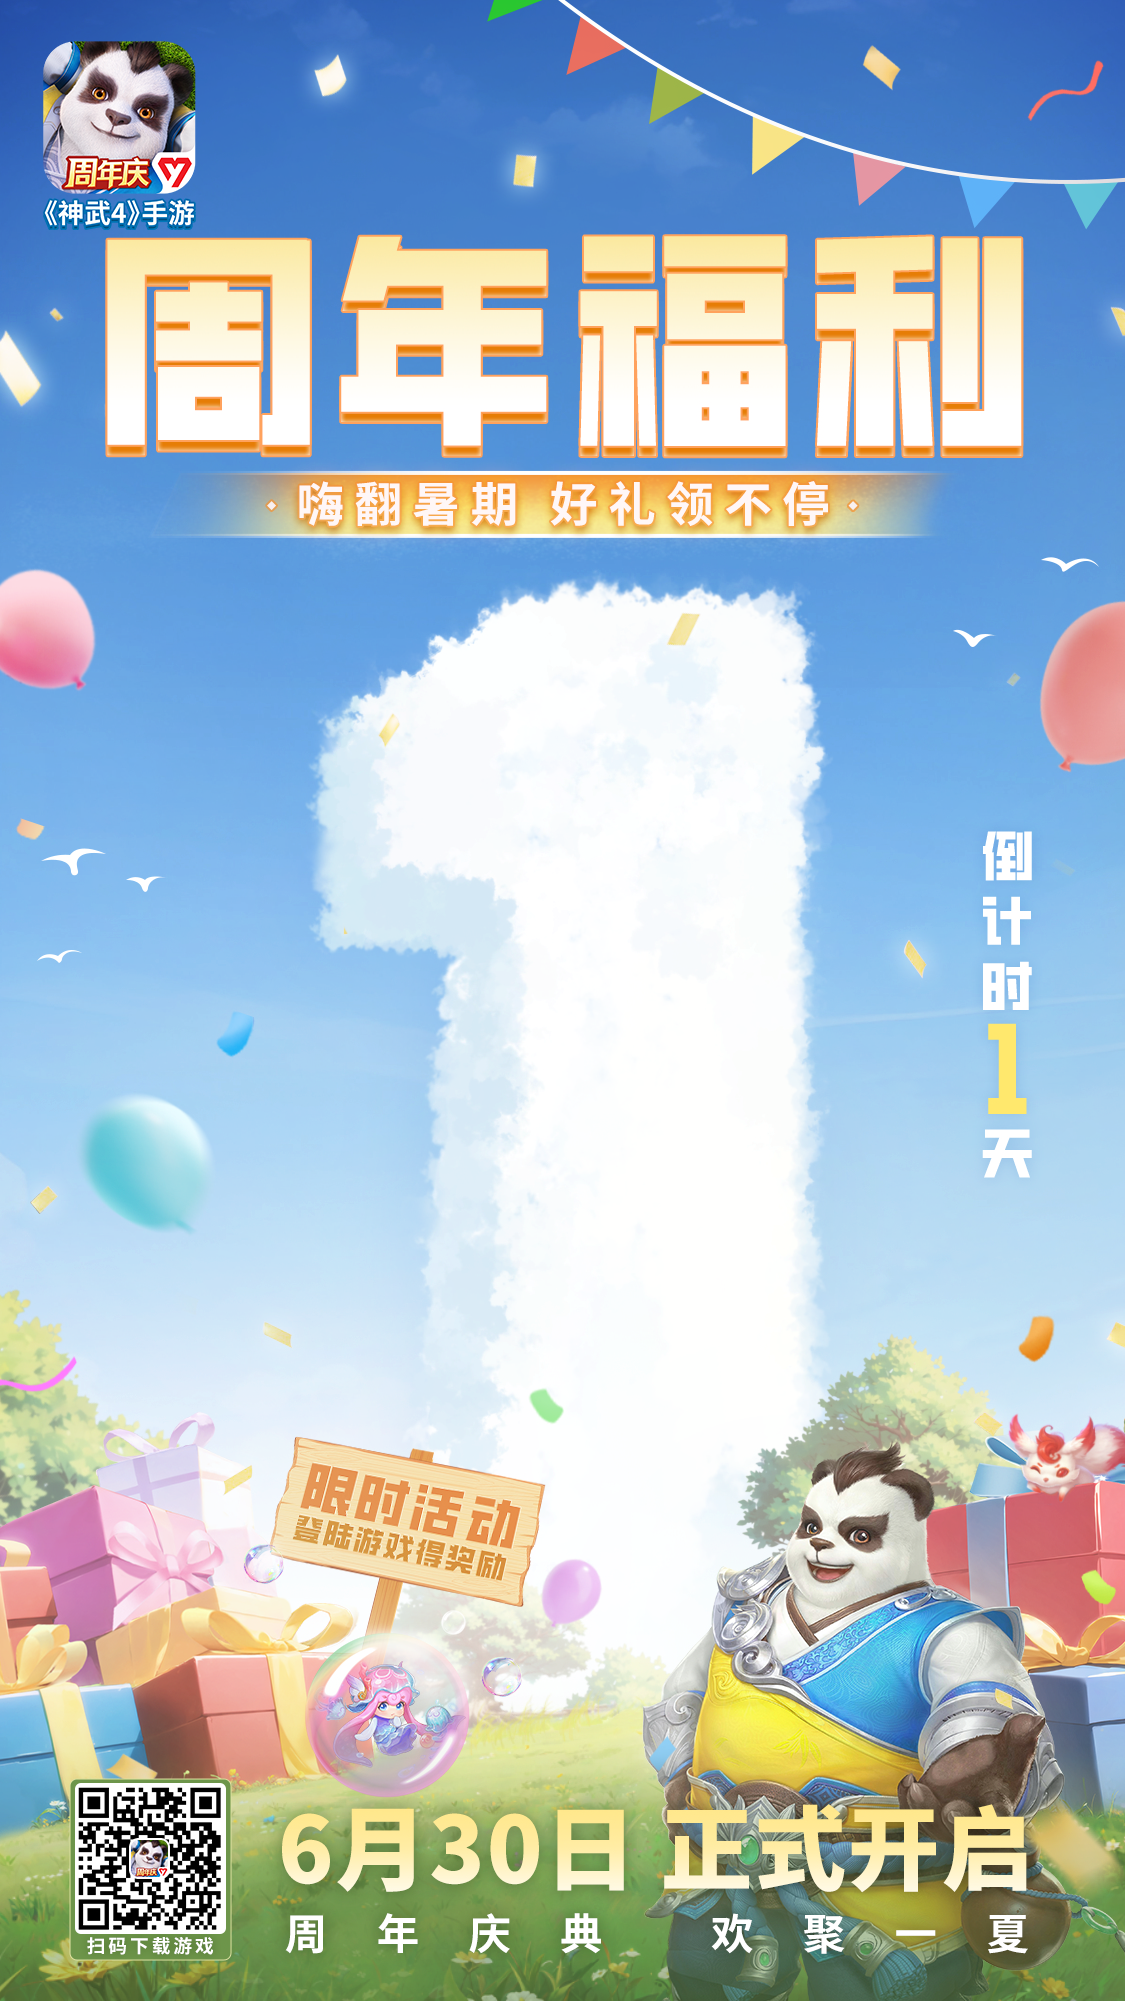 “神武4”手機遊戯周年活動6月30日開始